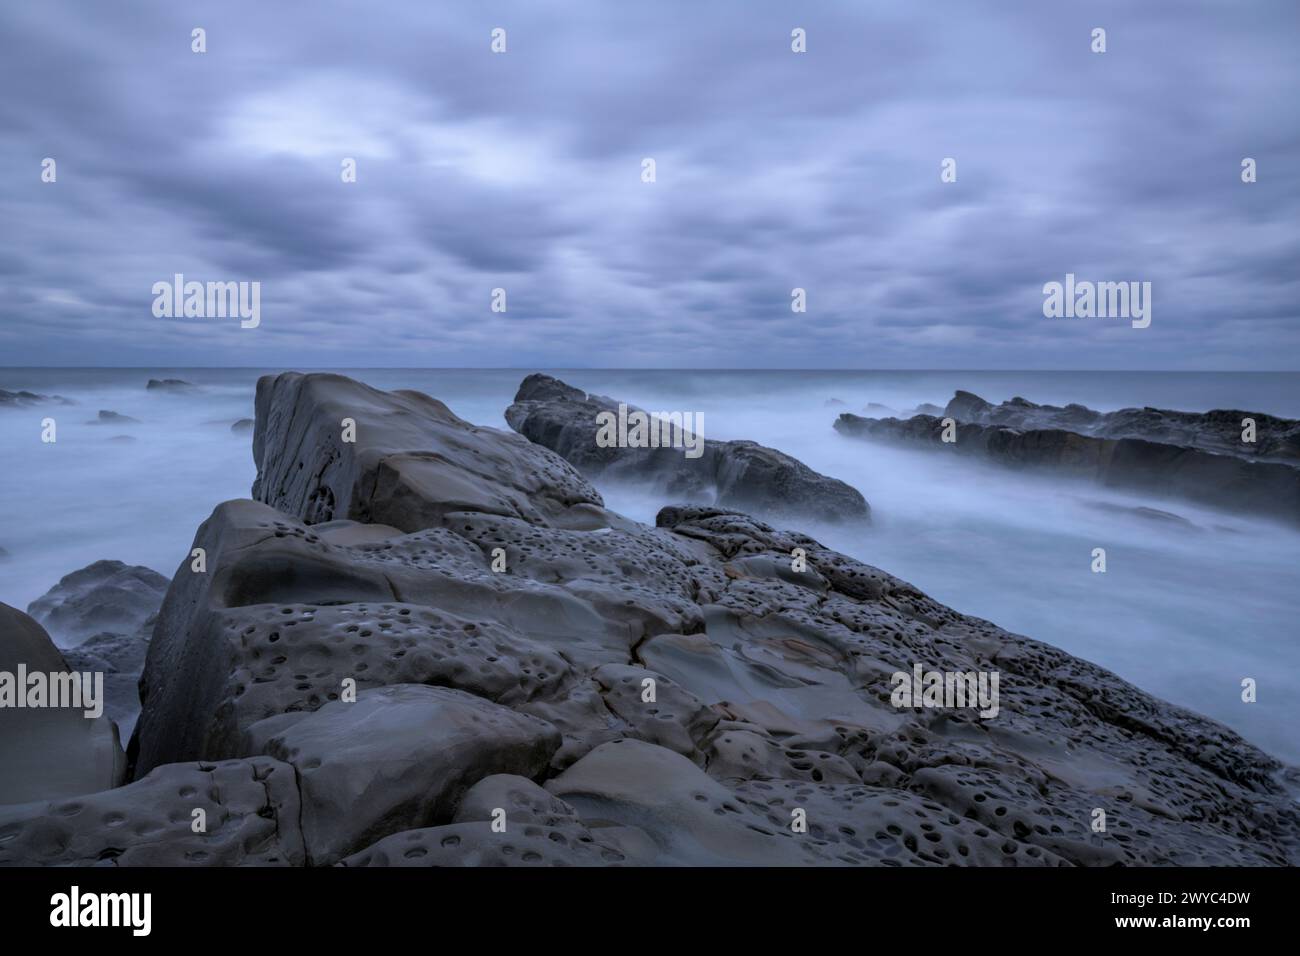 Atmosphère mystique avec des rochers lisses et altérés sur une côte rugueuse, sous un ciel couvert Banque D'Images